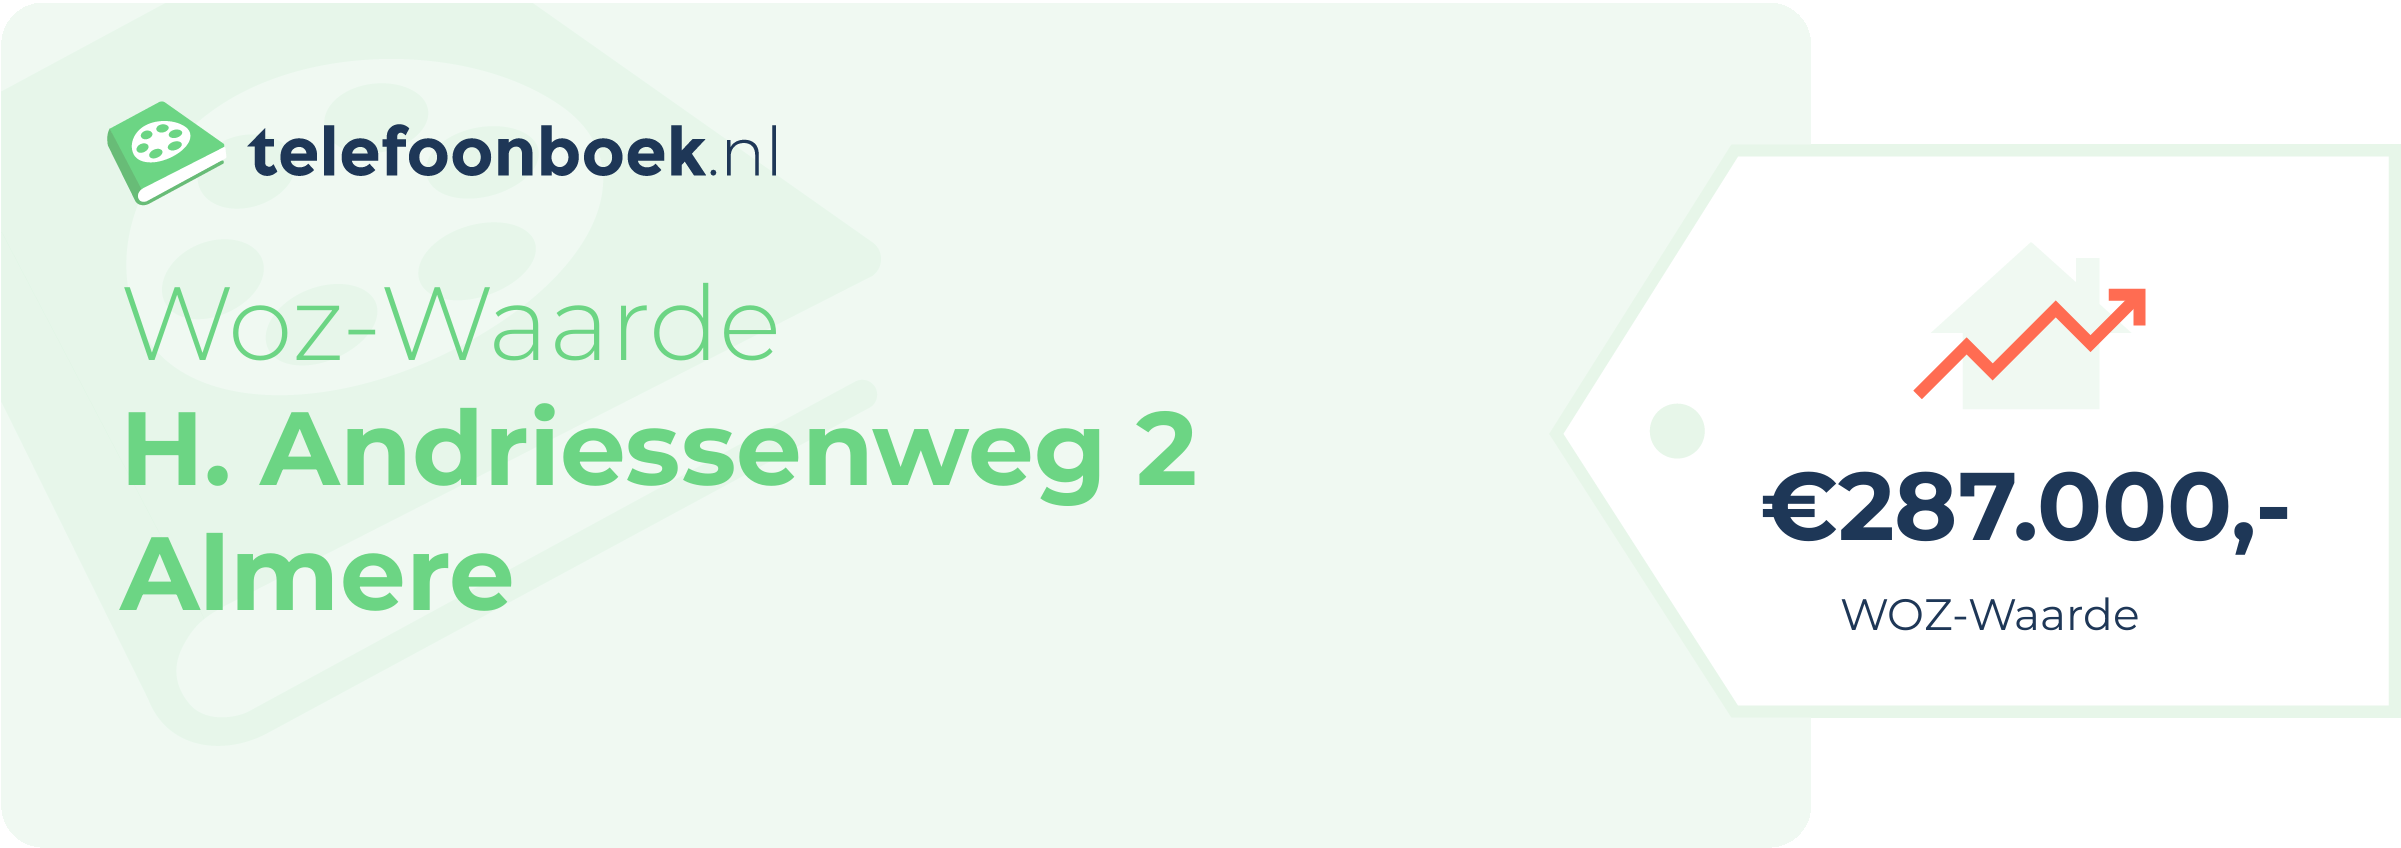 WOZ-waarde H. Andriessenweg 2 Almere